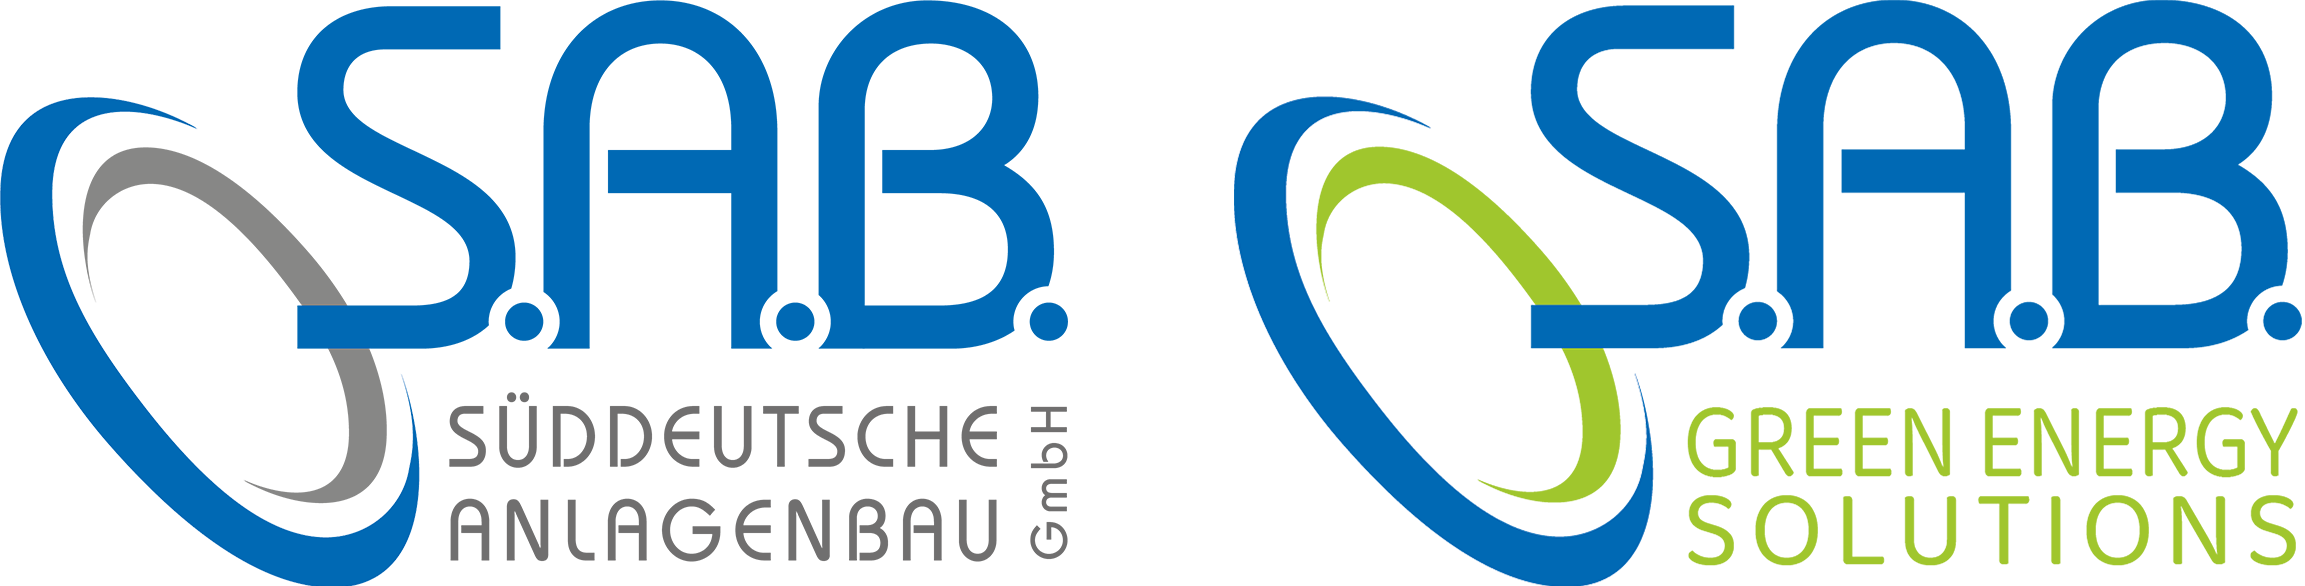 S.A.B. Süddeutsche Anlagenbau GmbH